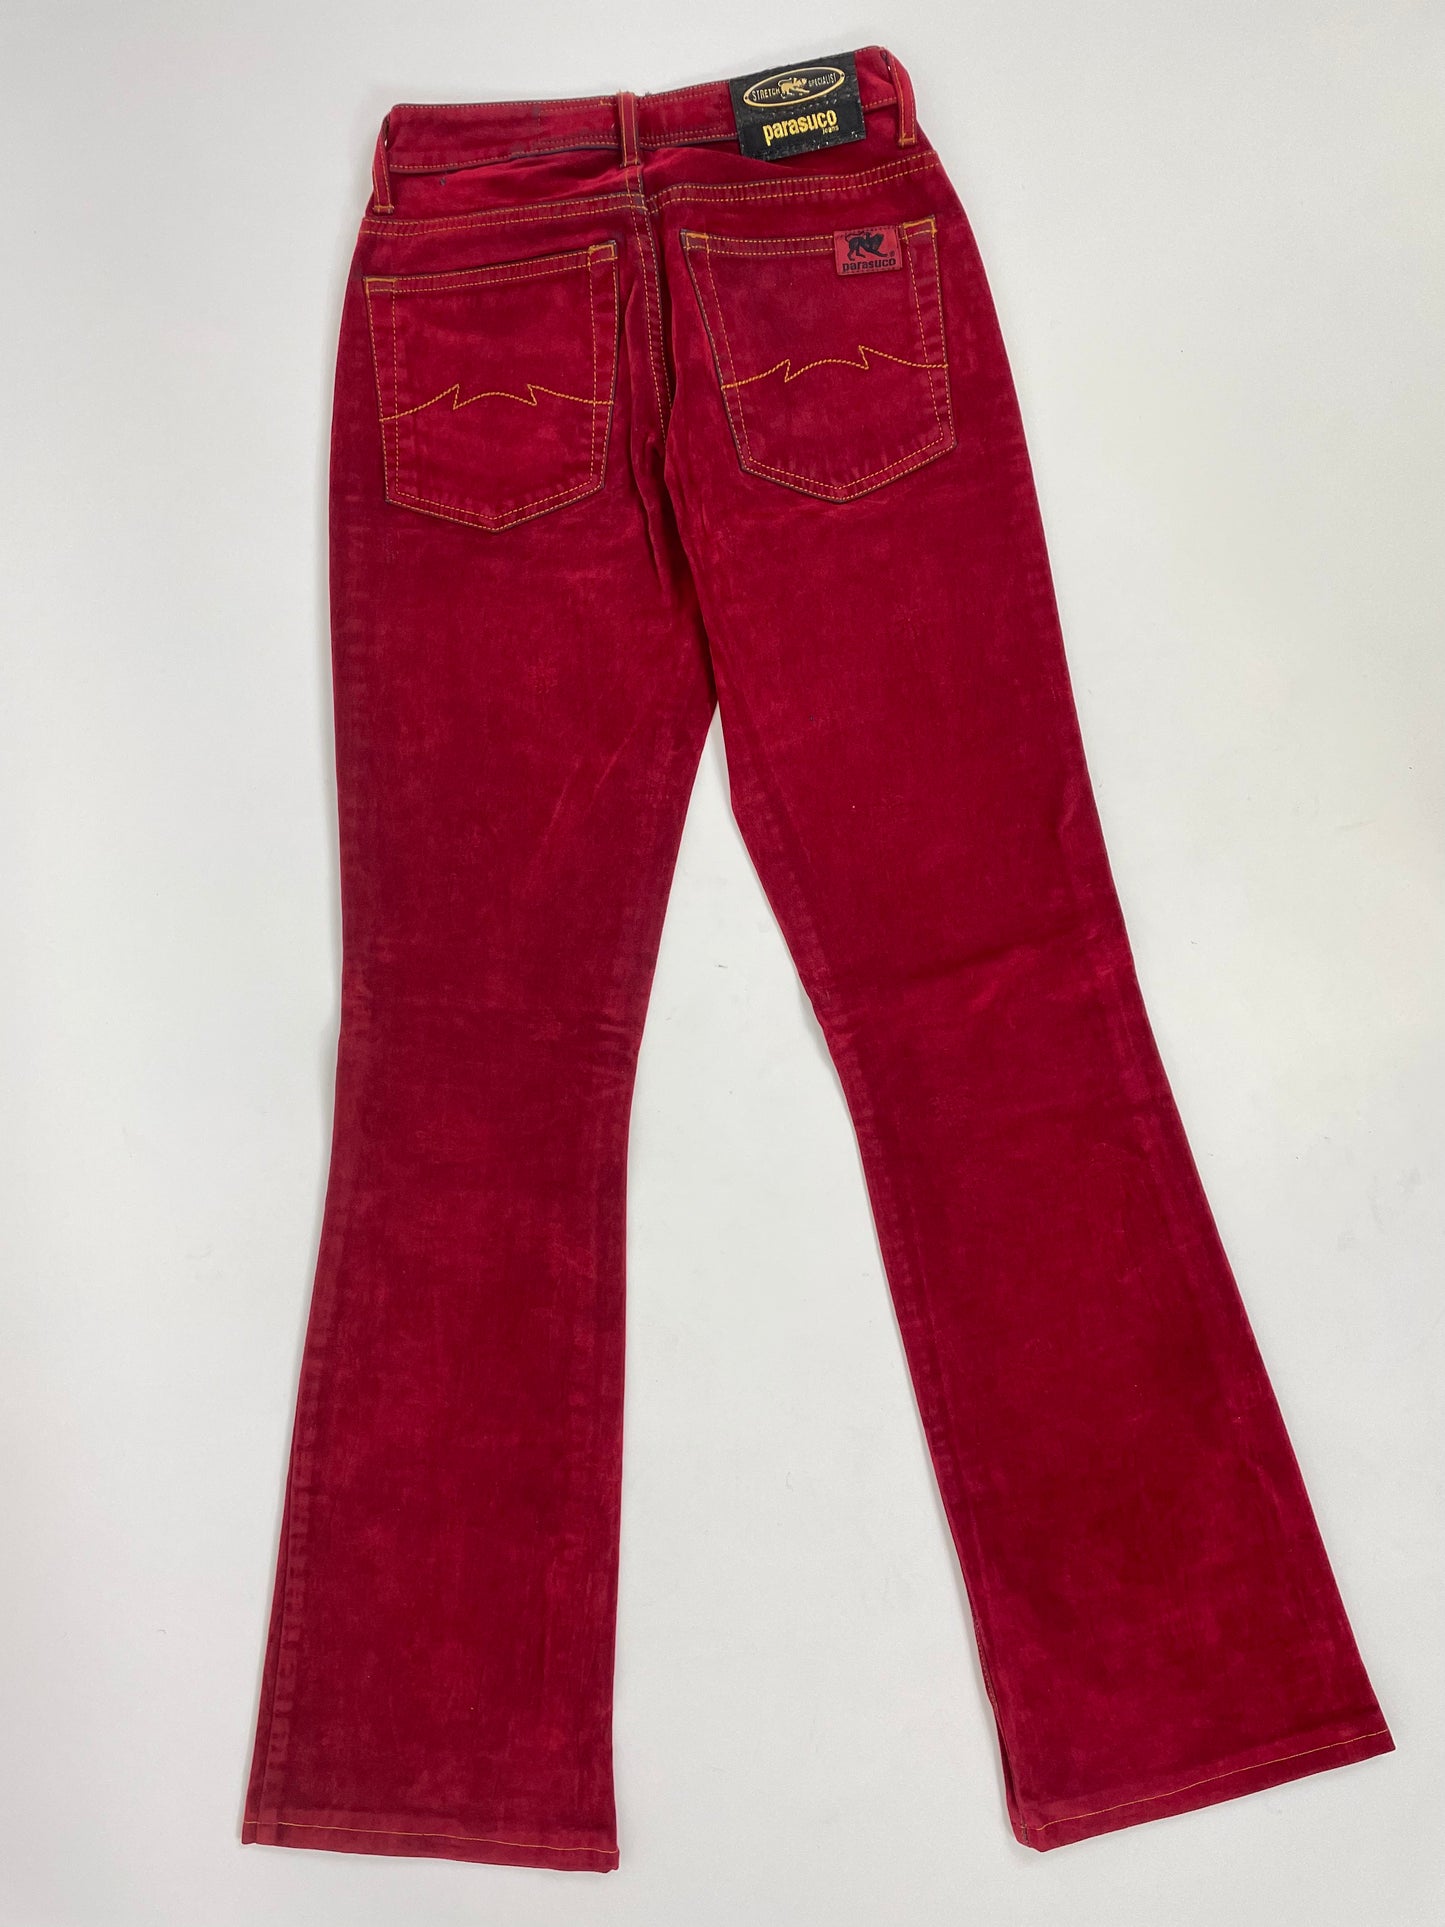 pantalone-anni-80-velluto-liscio-da-donna-colore-rosso-rubino